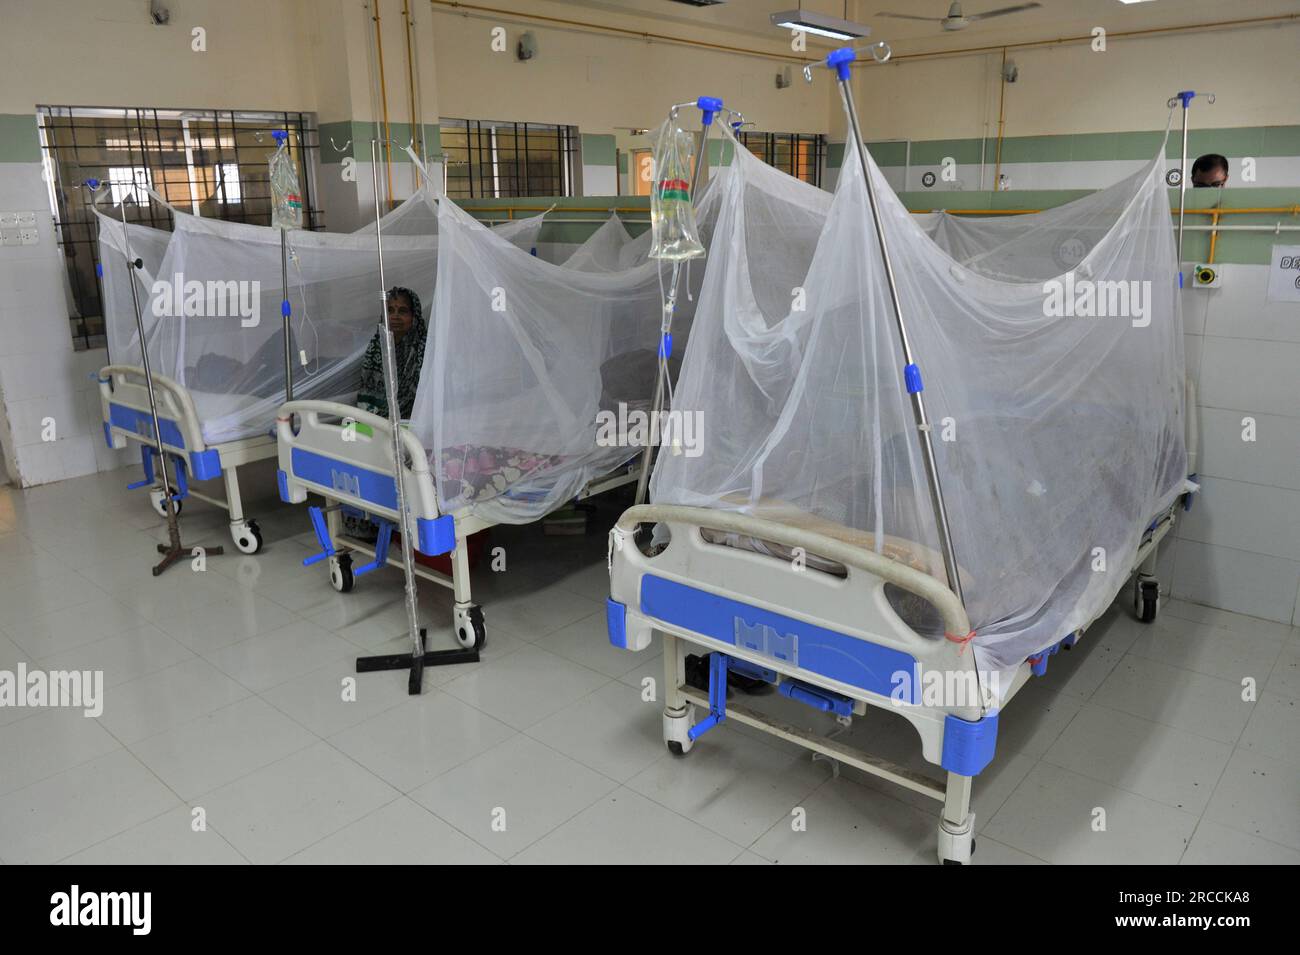 Menschen mit Dengue werden in der Dengue Station des Sylhet mag Osmani Medical College Hospital behandelt. Mehr als 6 Patienten werden derzeit behandelt. Die Zahl der in den Krankenhäusern von Bangladesch diagnostizierten Dengue-Patienten nimmt allmählich zu, und die Zahl der Dengue-Fälle und Todesfälle hat in den letzten drei Wochen im ganzen Land alarmierend zugenommen. Sylhet, Bangladesch. Stockfoto